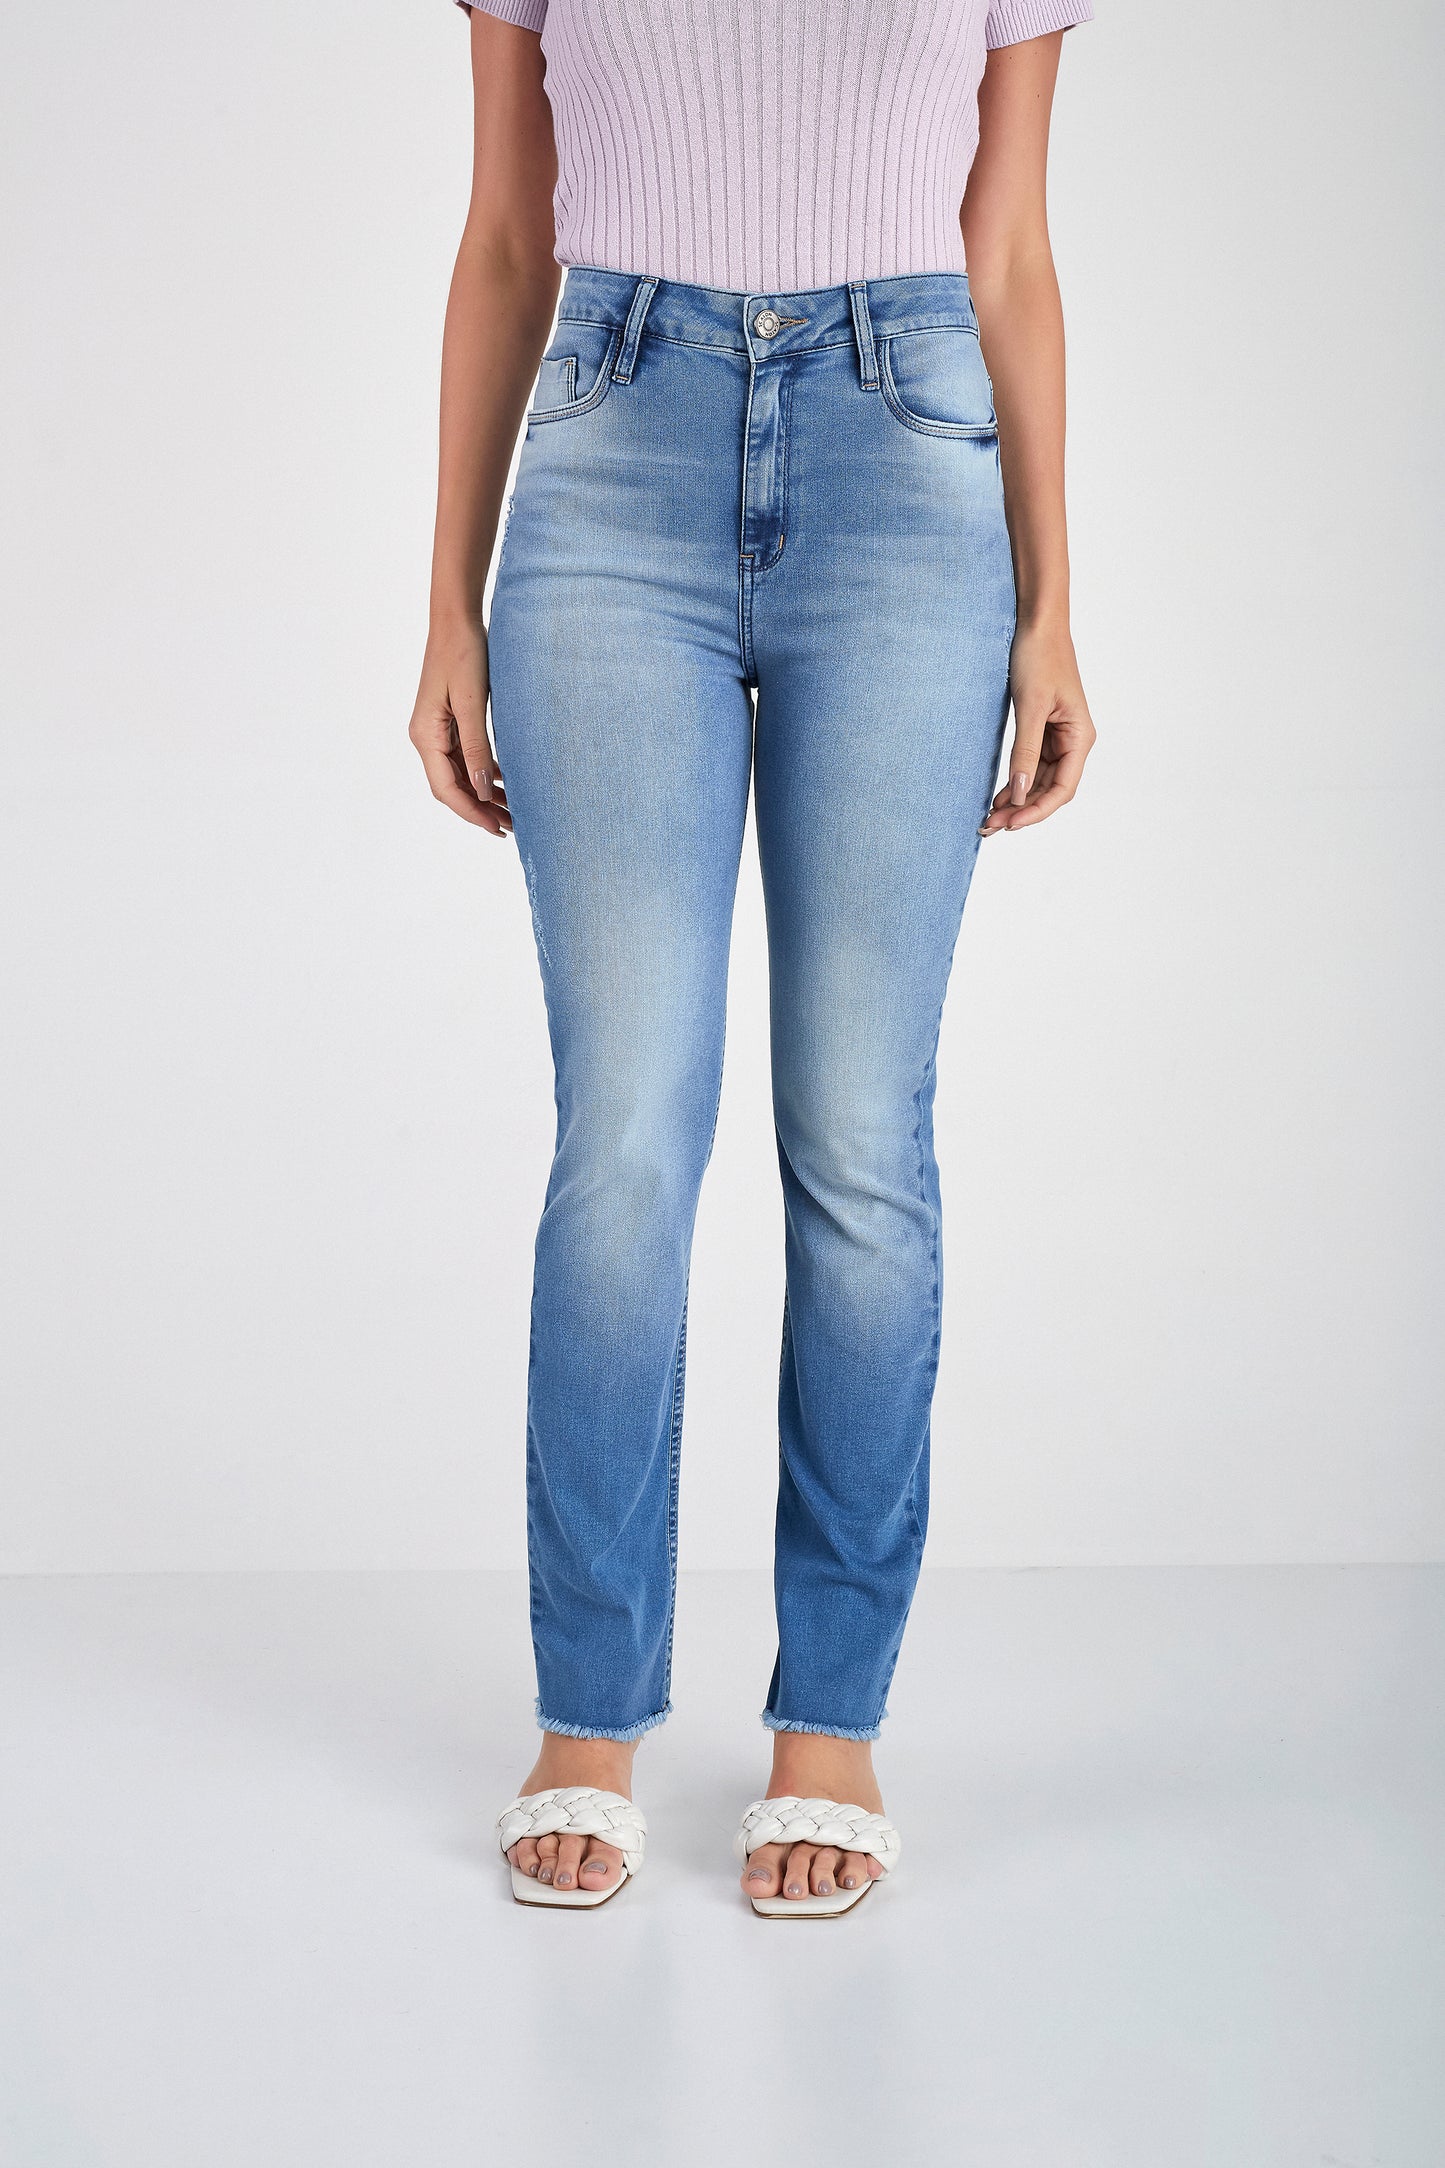 calça jeans reta cintura intermediária com barra a fio